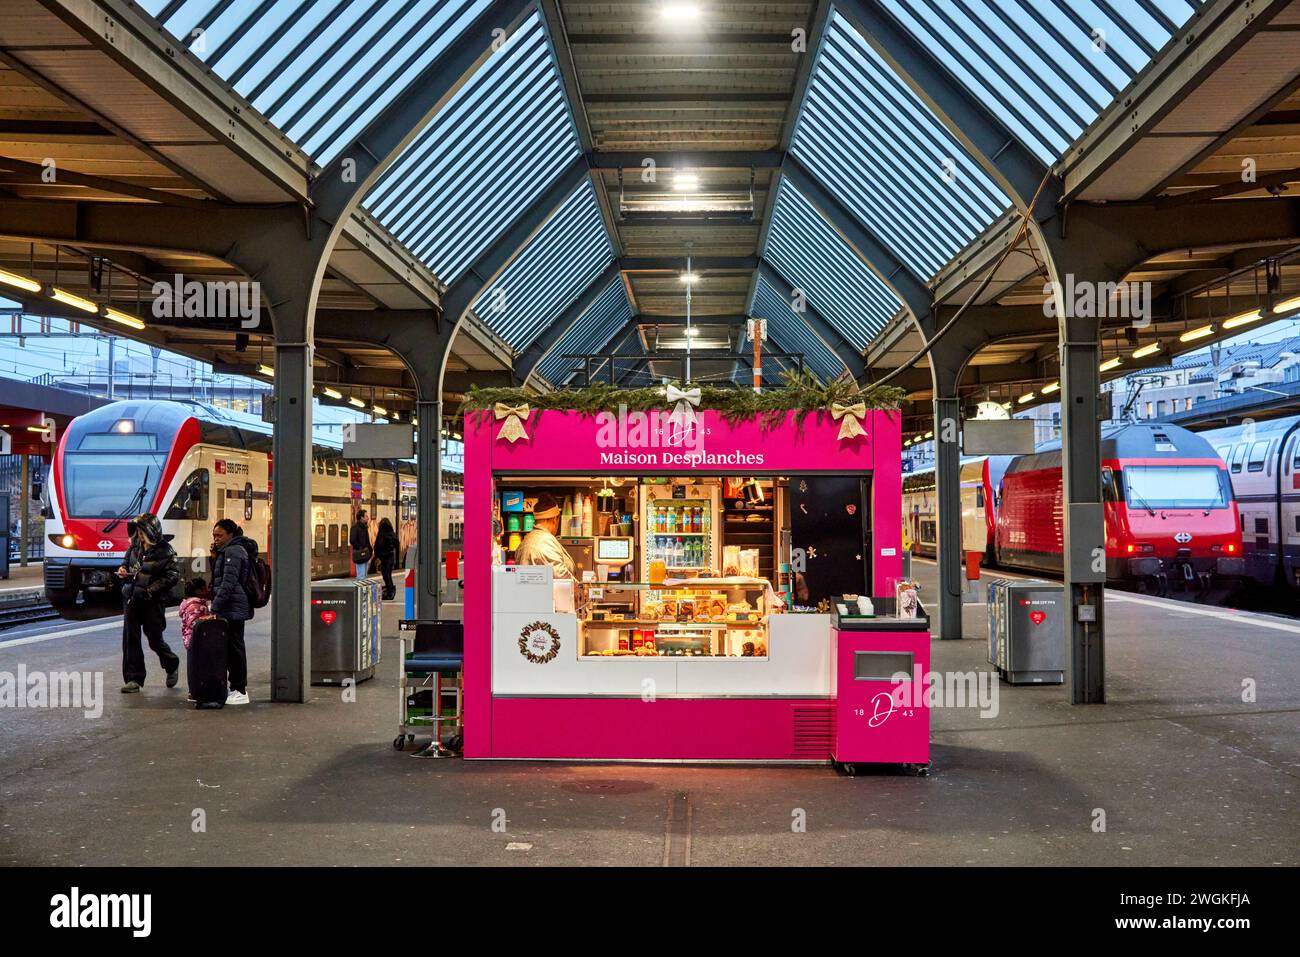 Ginevra città in Svizzera stazione ferroviaria Gare de Genève chiosco della pasticceria Maison Desplanches Foto Stock